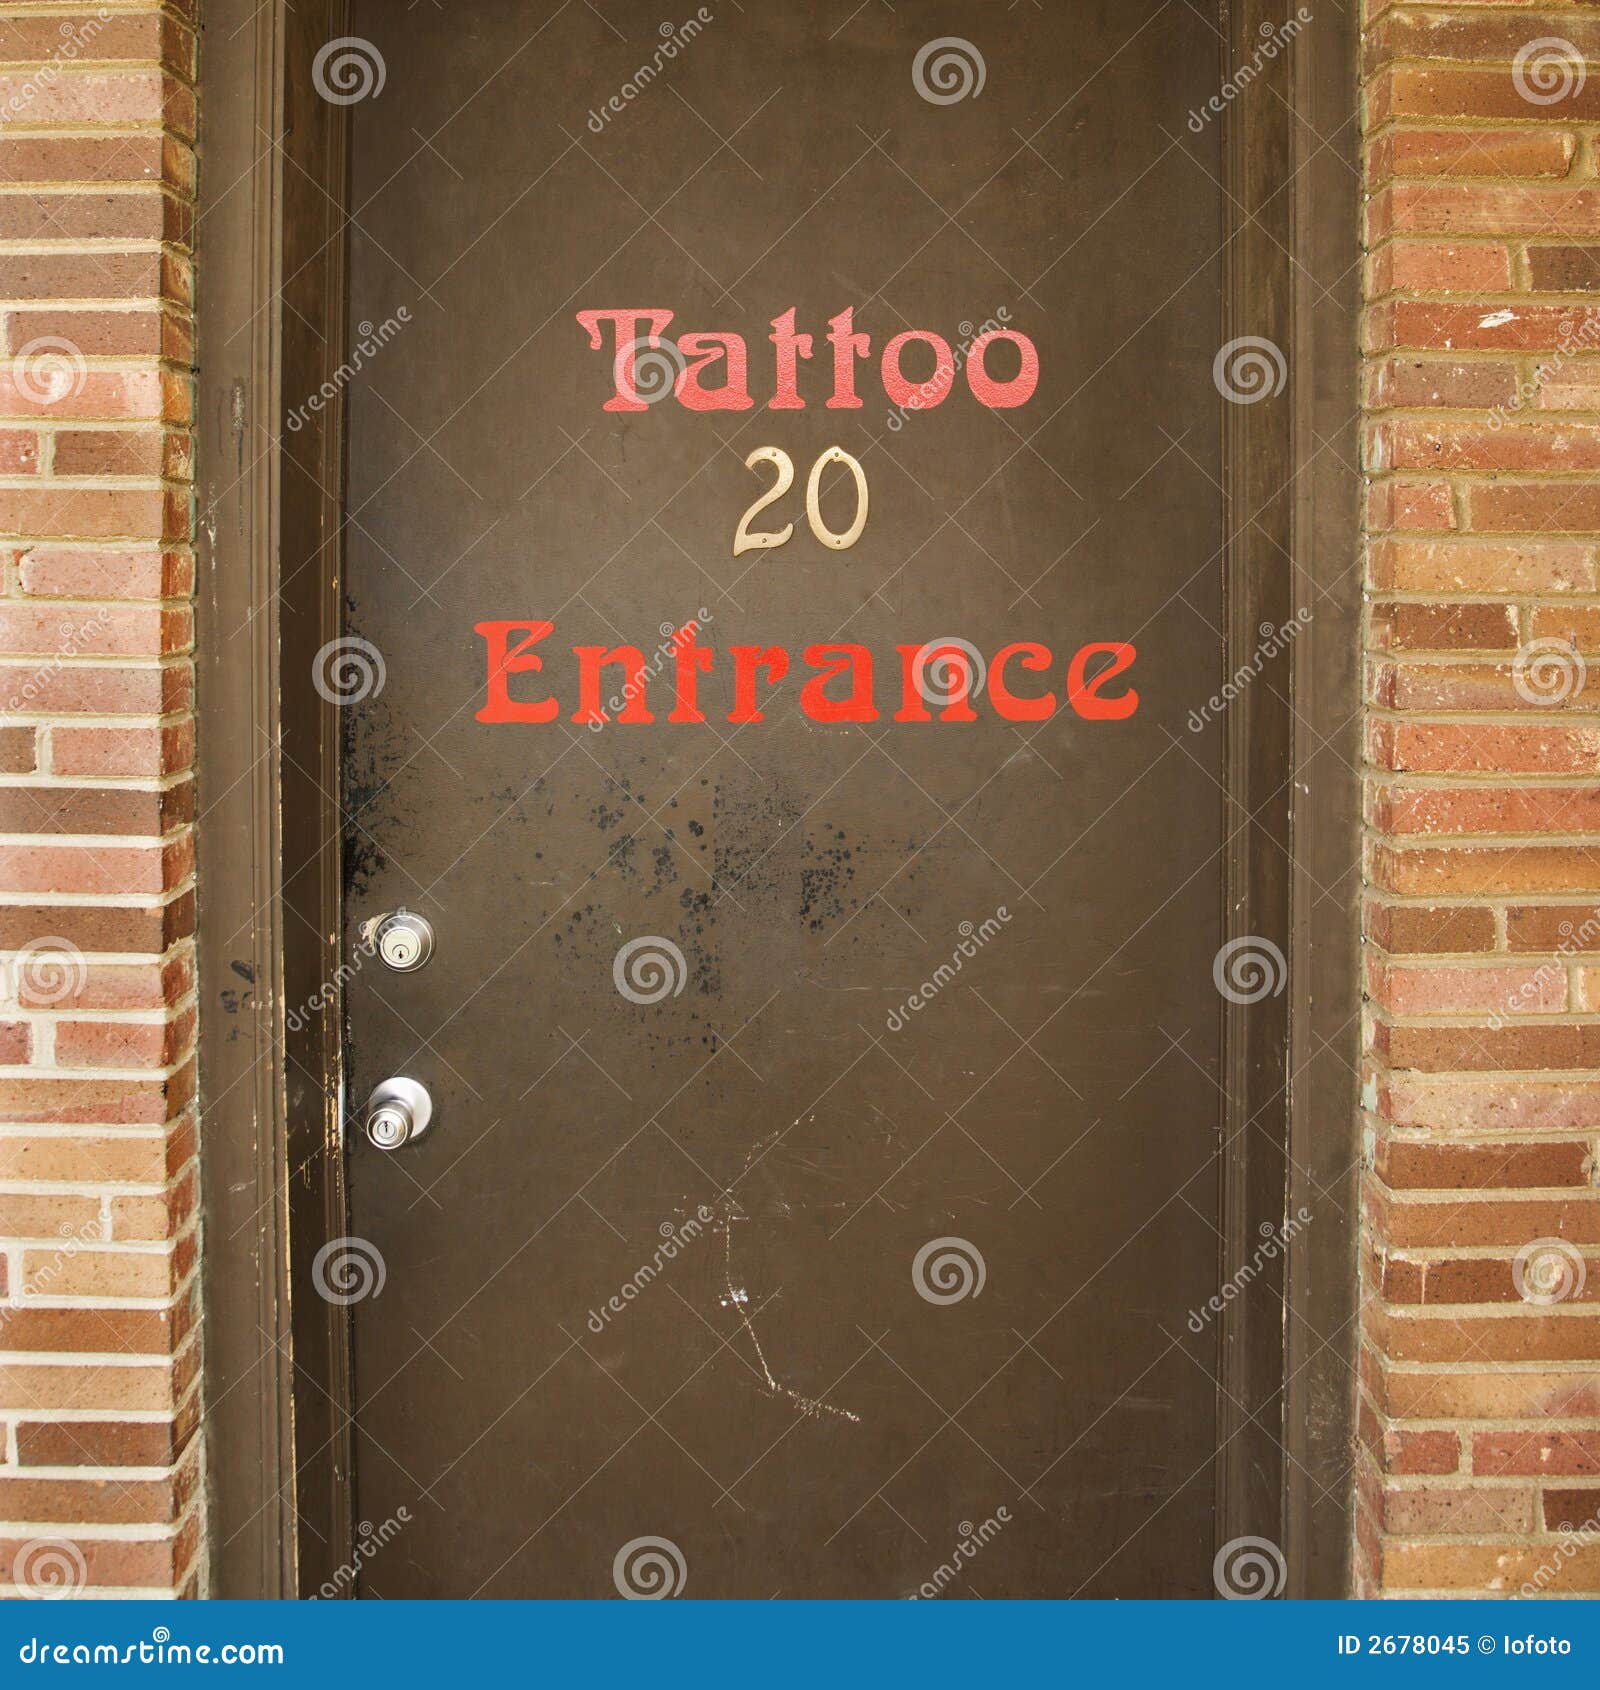 door to tattoo parlor.